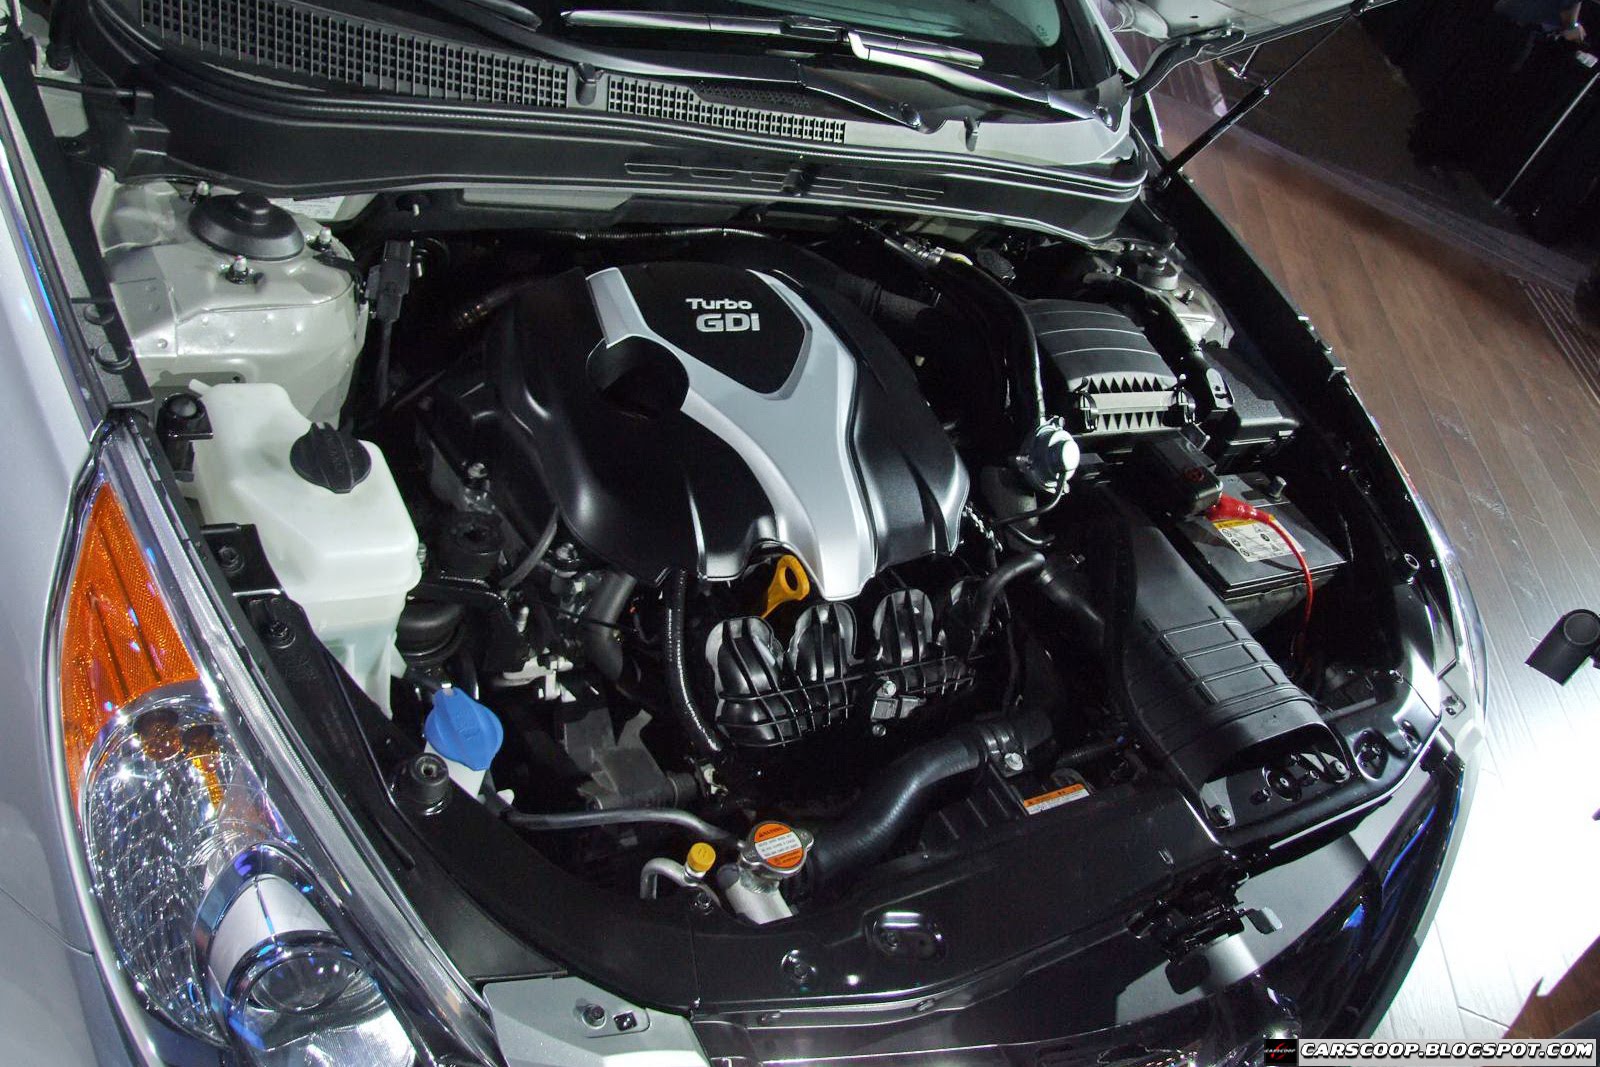 NY Show: 2011 Hyundai Sonata gets New 2.0 Turbo with 274HP | Carscoops